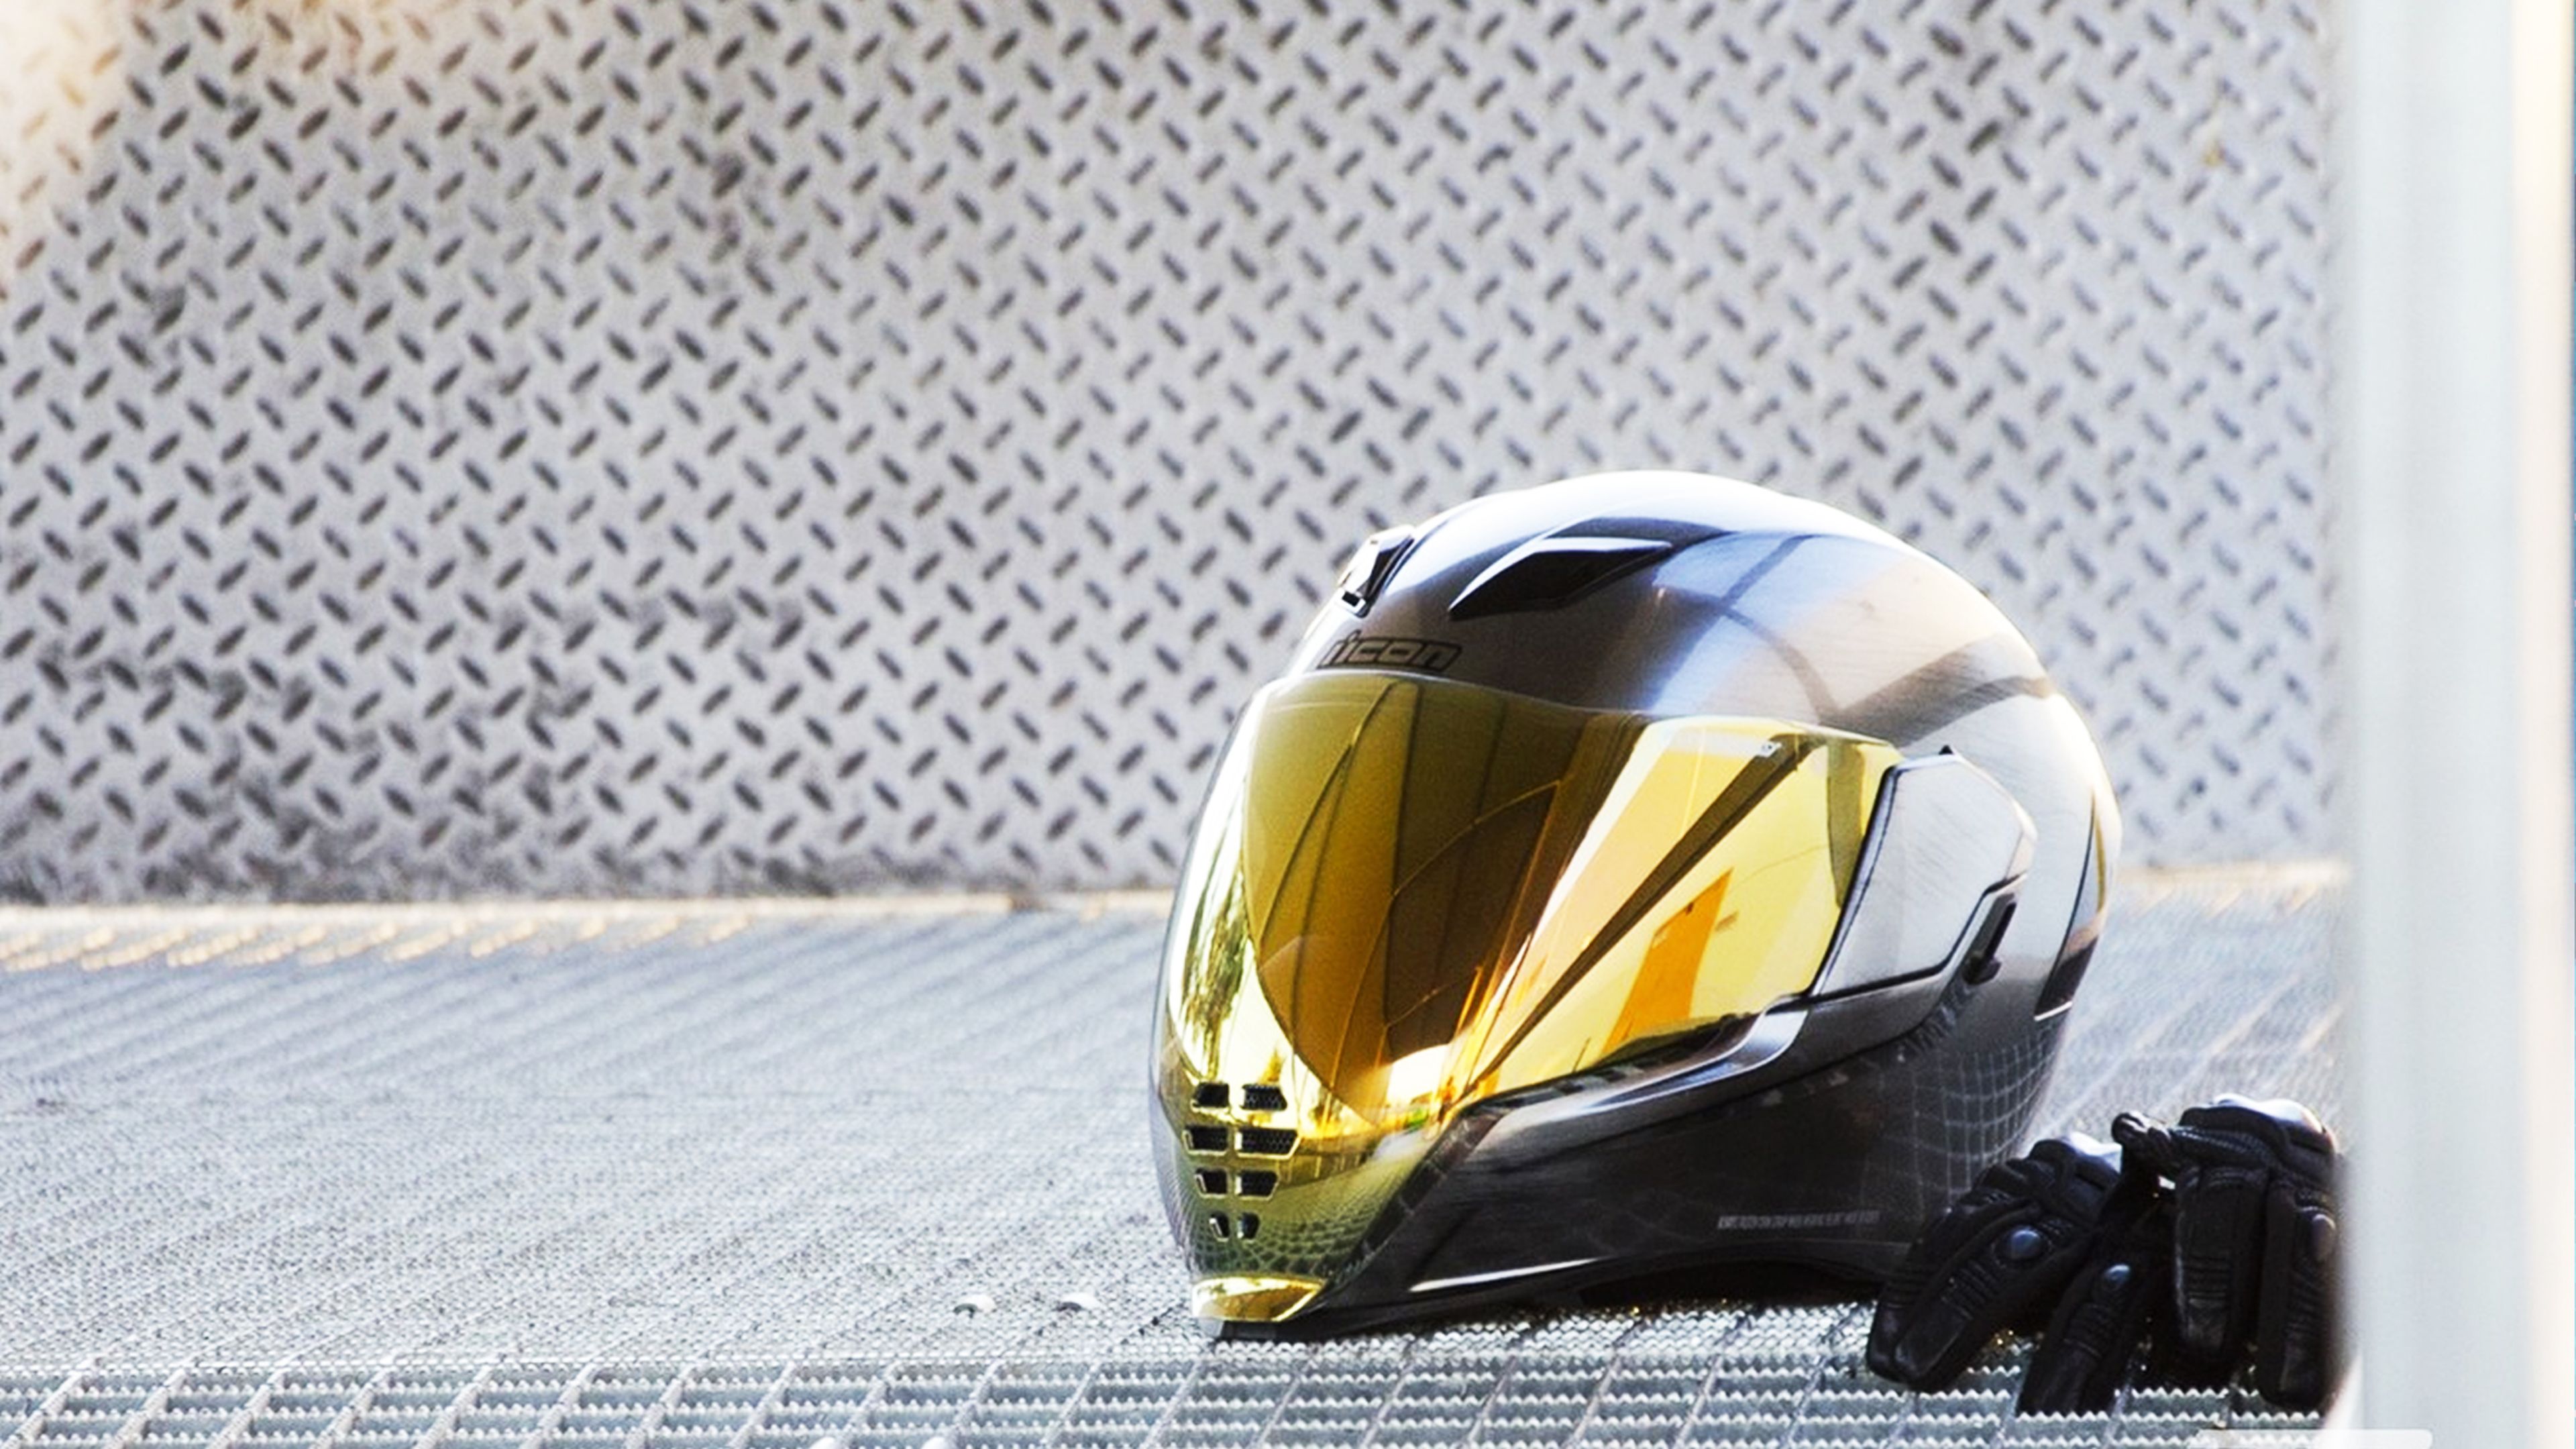 Casco de carbono. ¿Qué casco de moto es el mejor? Comparativa · Motocard